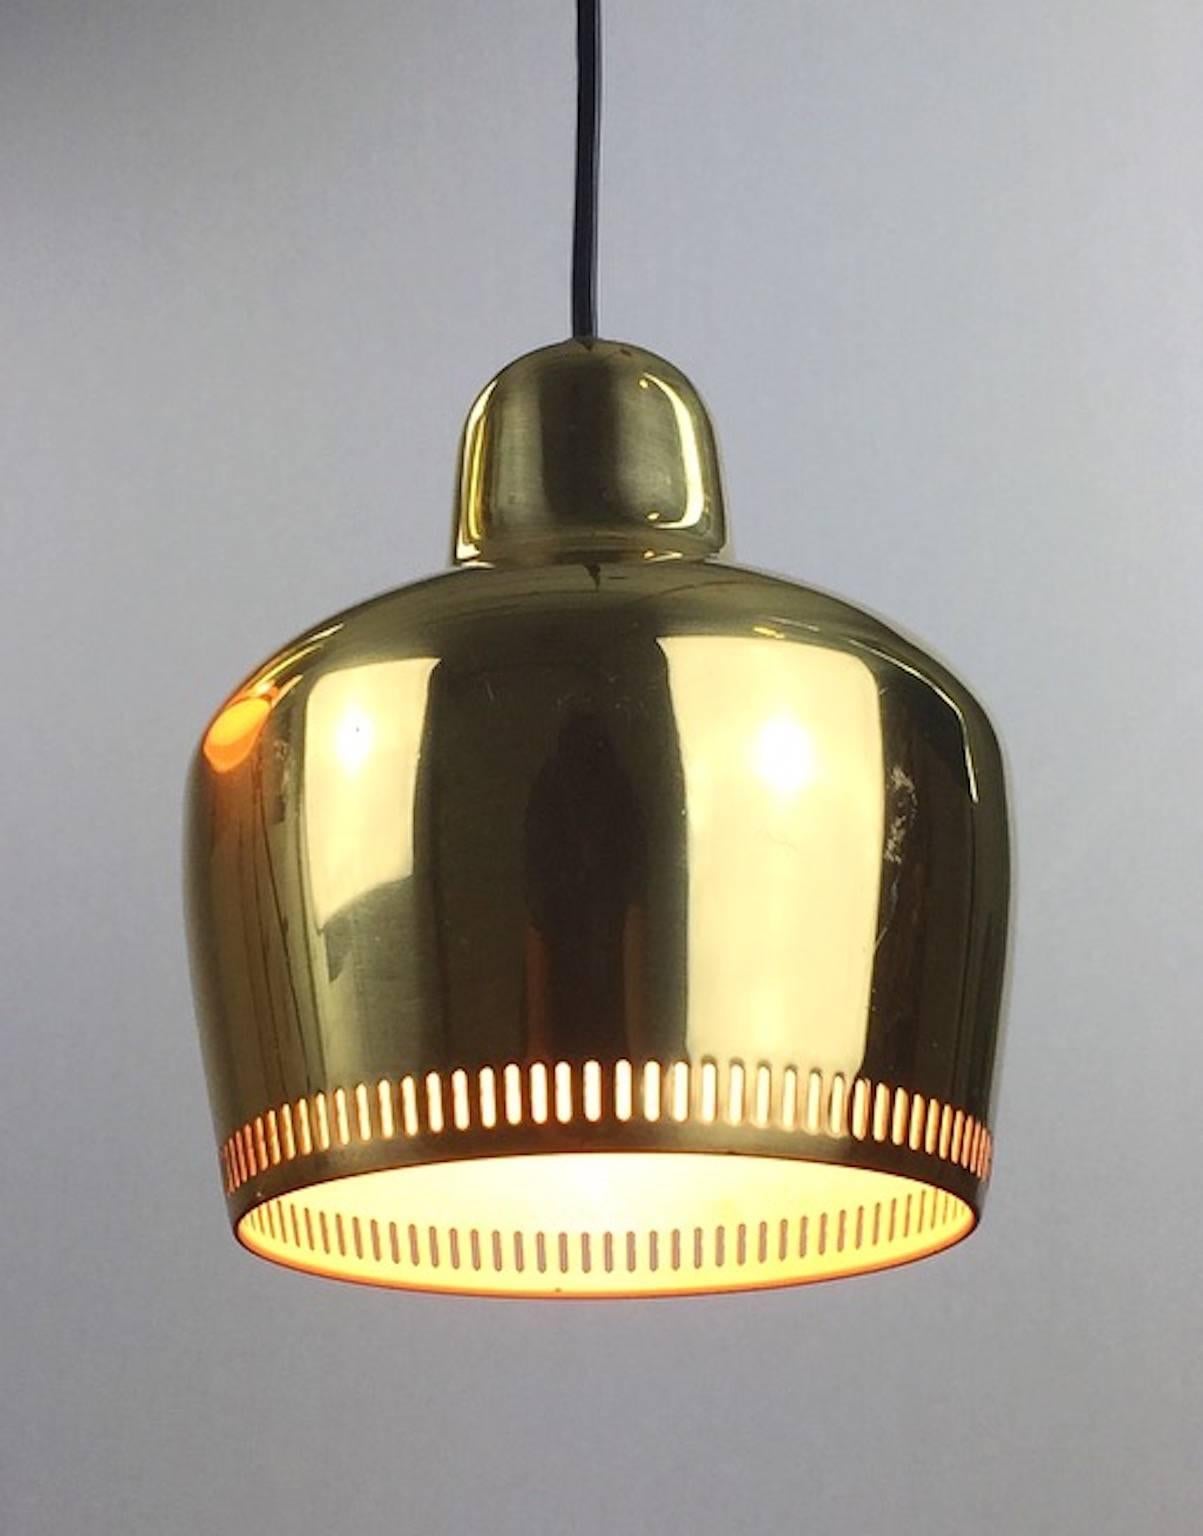 Scandinavian Modern Golden Bell Pendant by Alvar Aalto for Artek